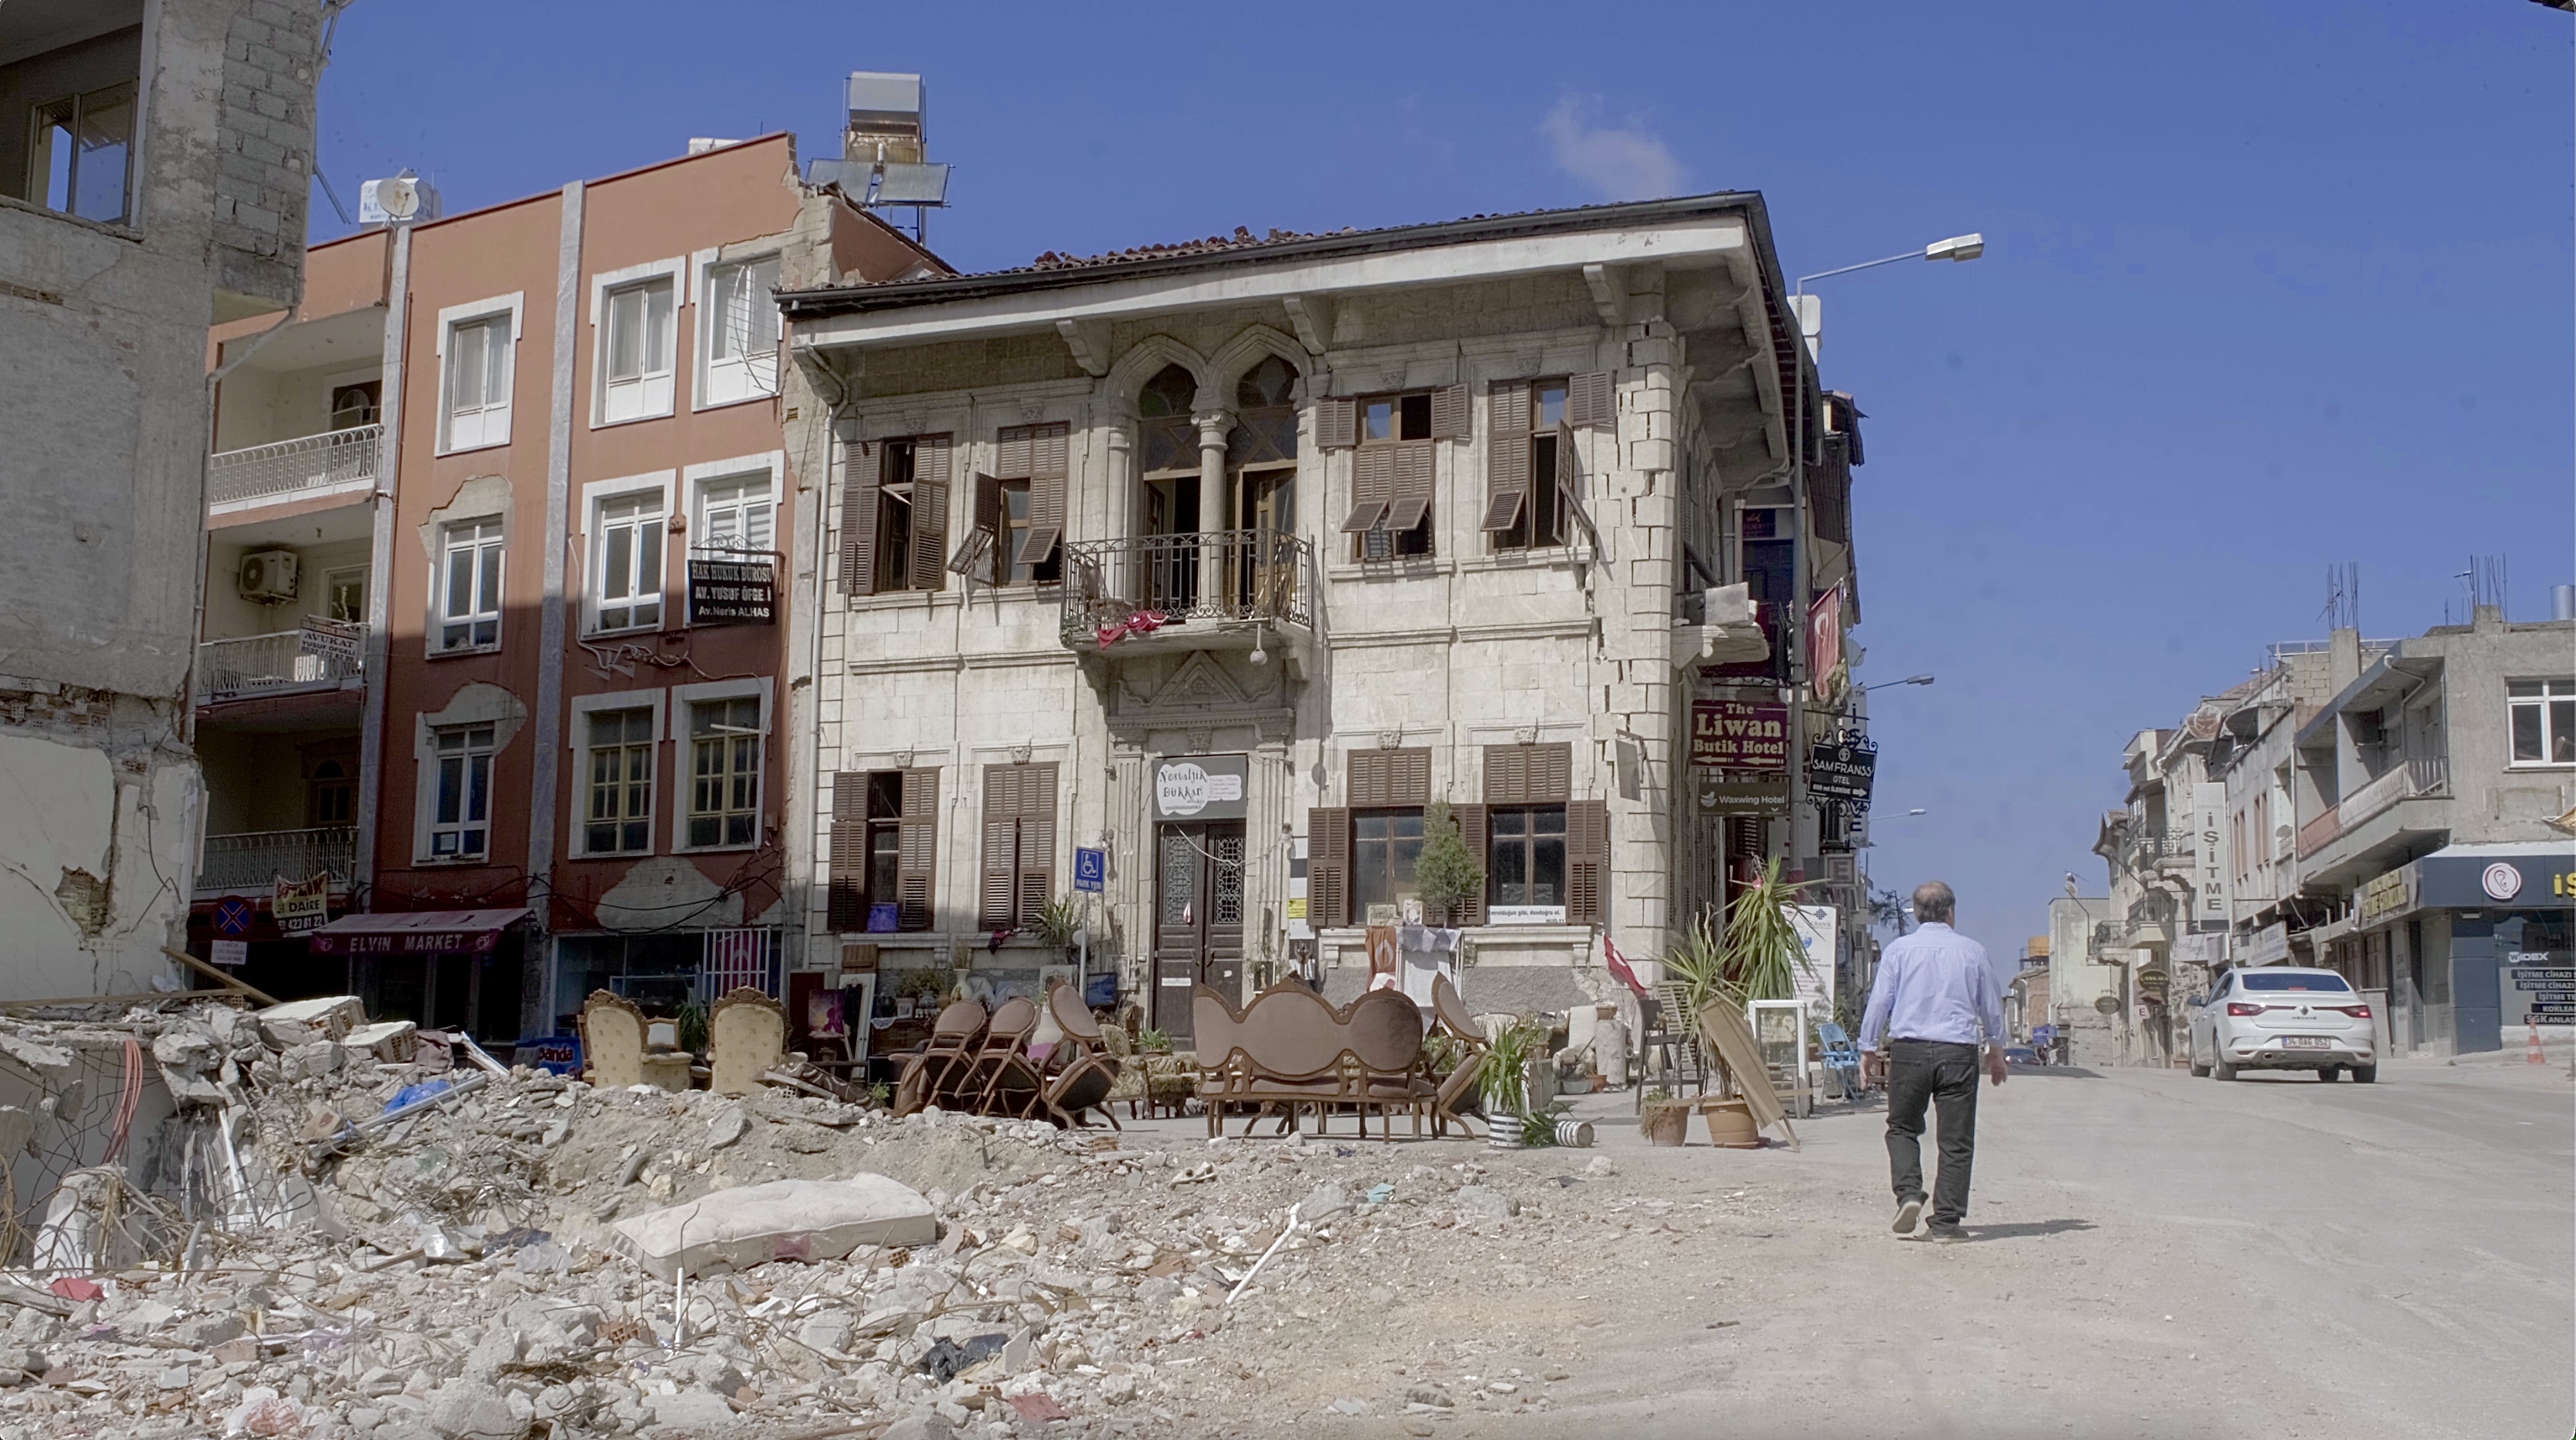 Eines der wenigen verbliebenen historischen Gebäude in der Kurtuluş Caddesi (Herodes Straße), Antakya, Türkei (Foto: Ayşe Karabat)